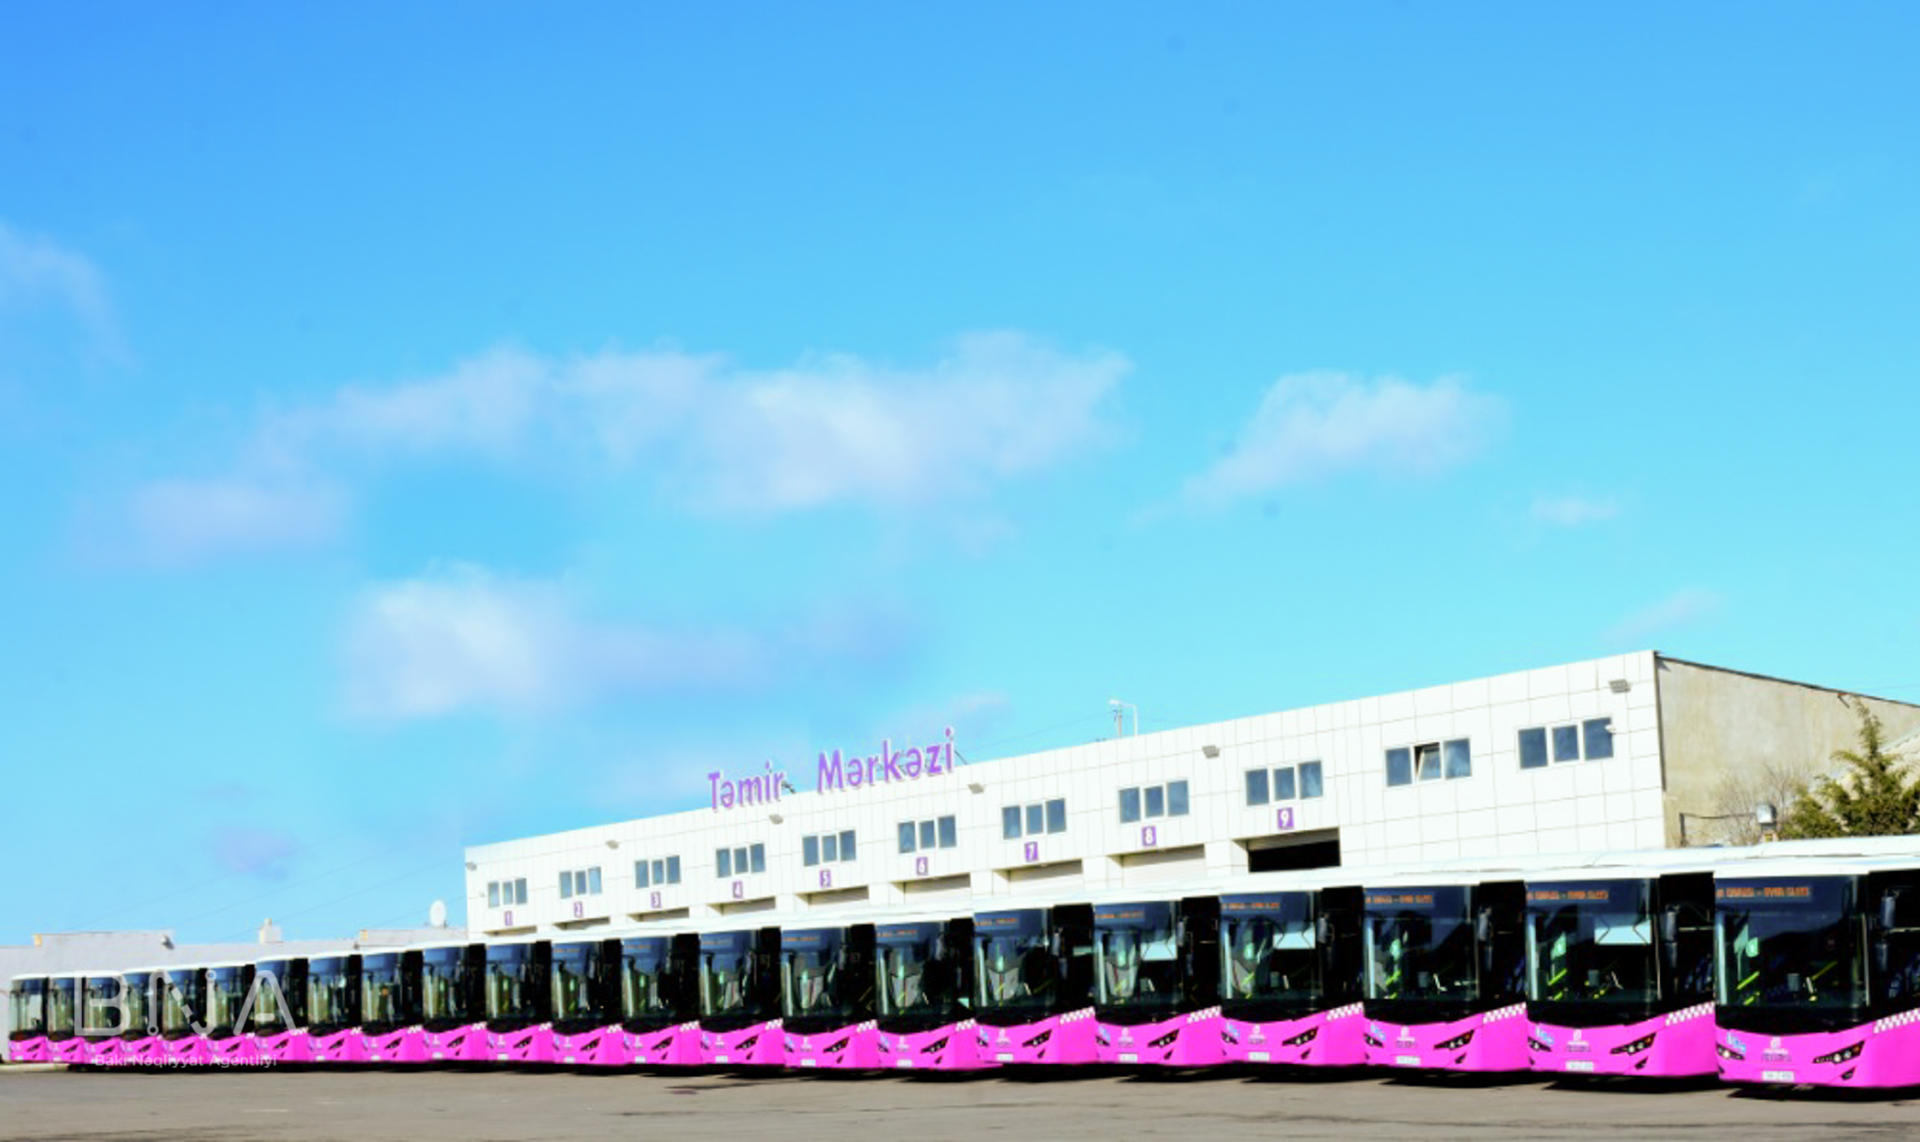 С завтрашнего дня в Баку будет обновлен автобусный парк на одной маршрутной линии (ФОТО)